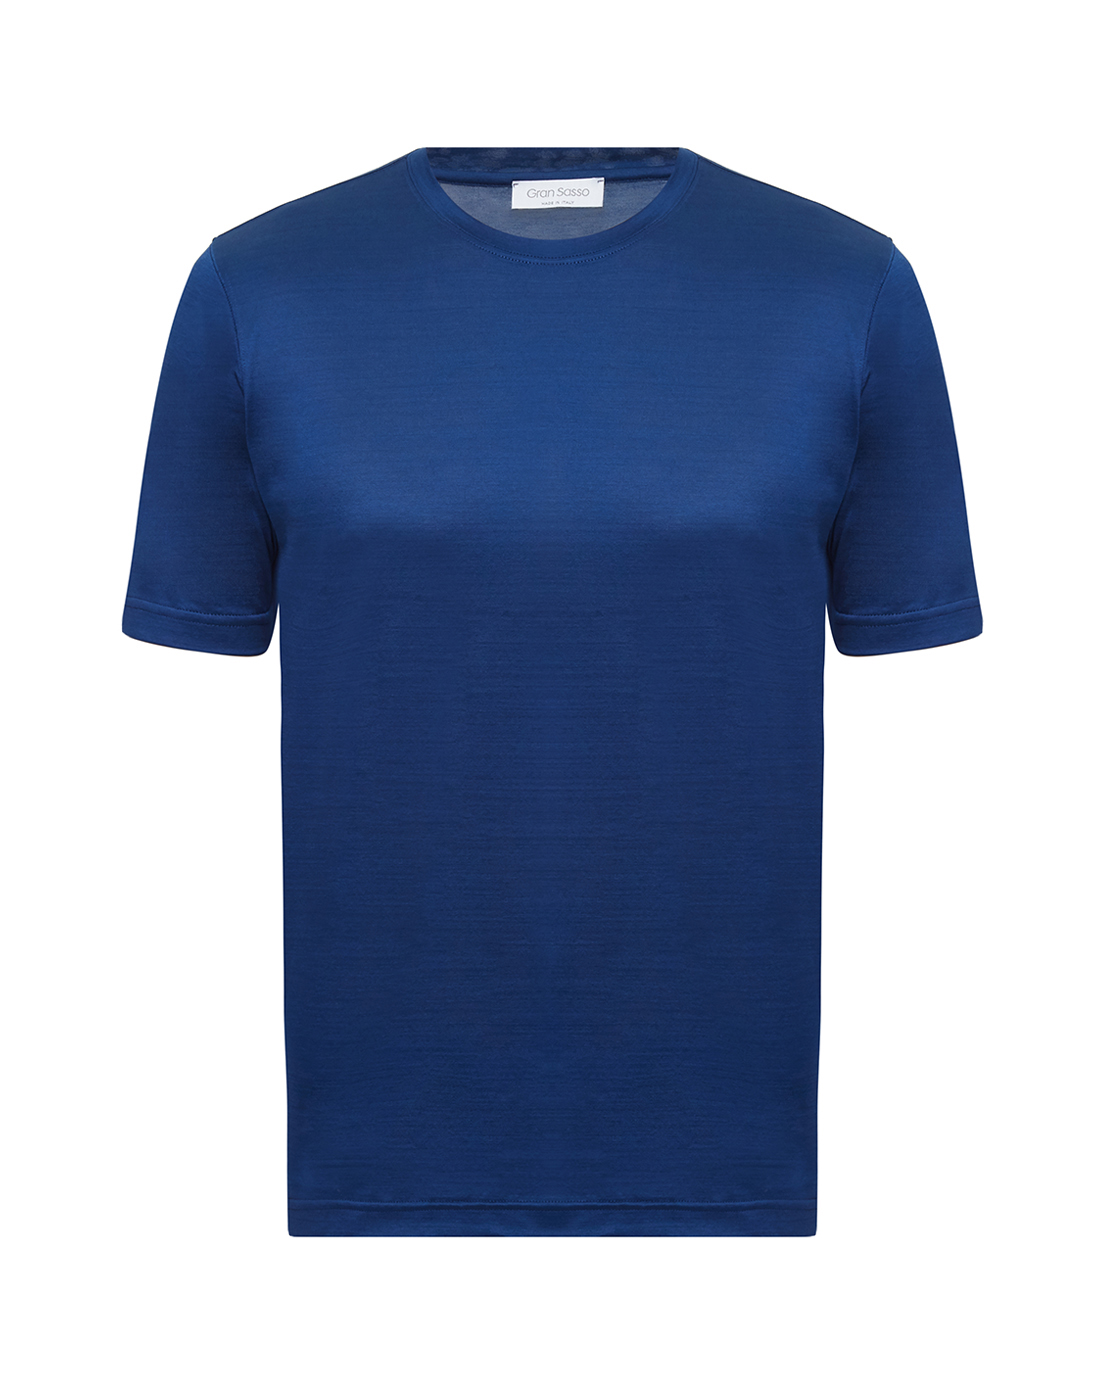 Мужская синяя футболка Gran Sasso SG2021/60133/74001/596-1